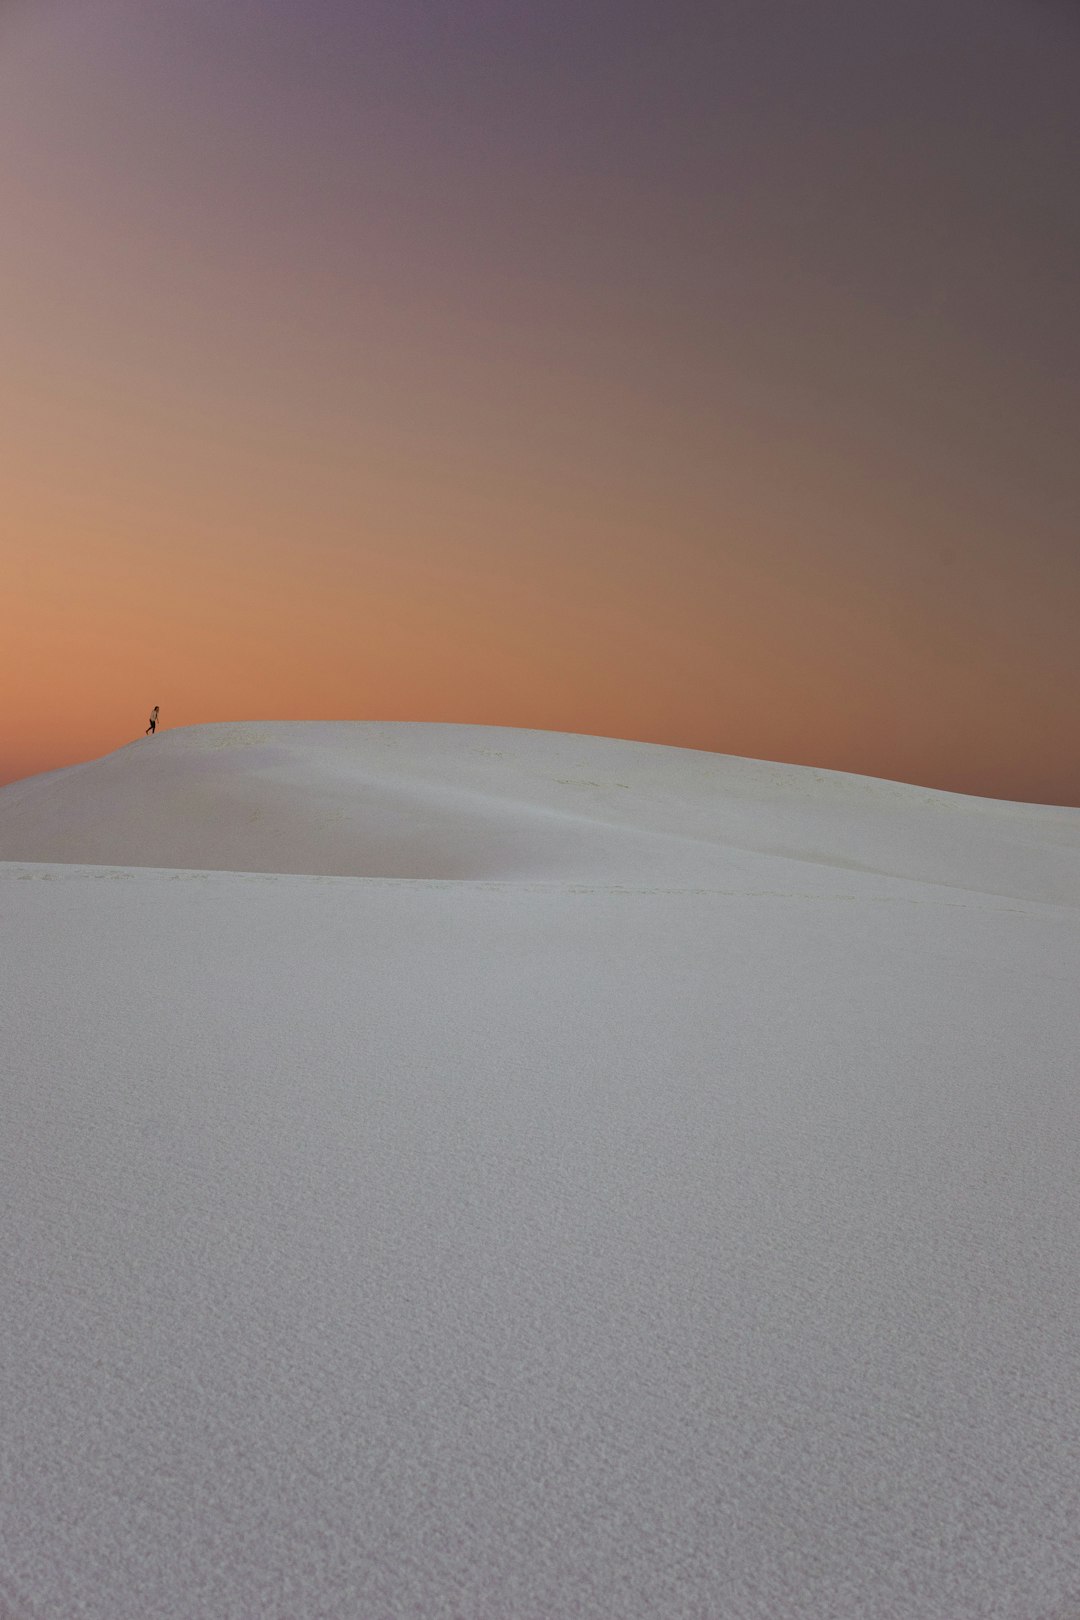 Desert photo spot White Sands National Monument United States